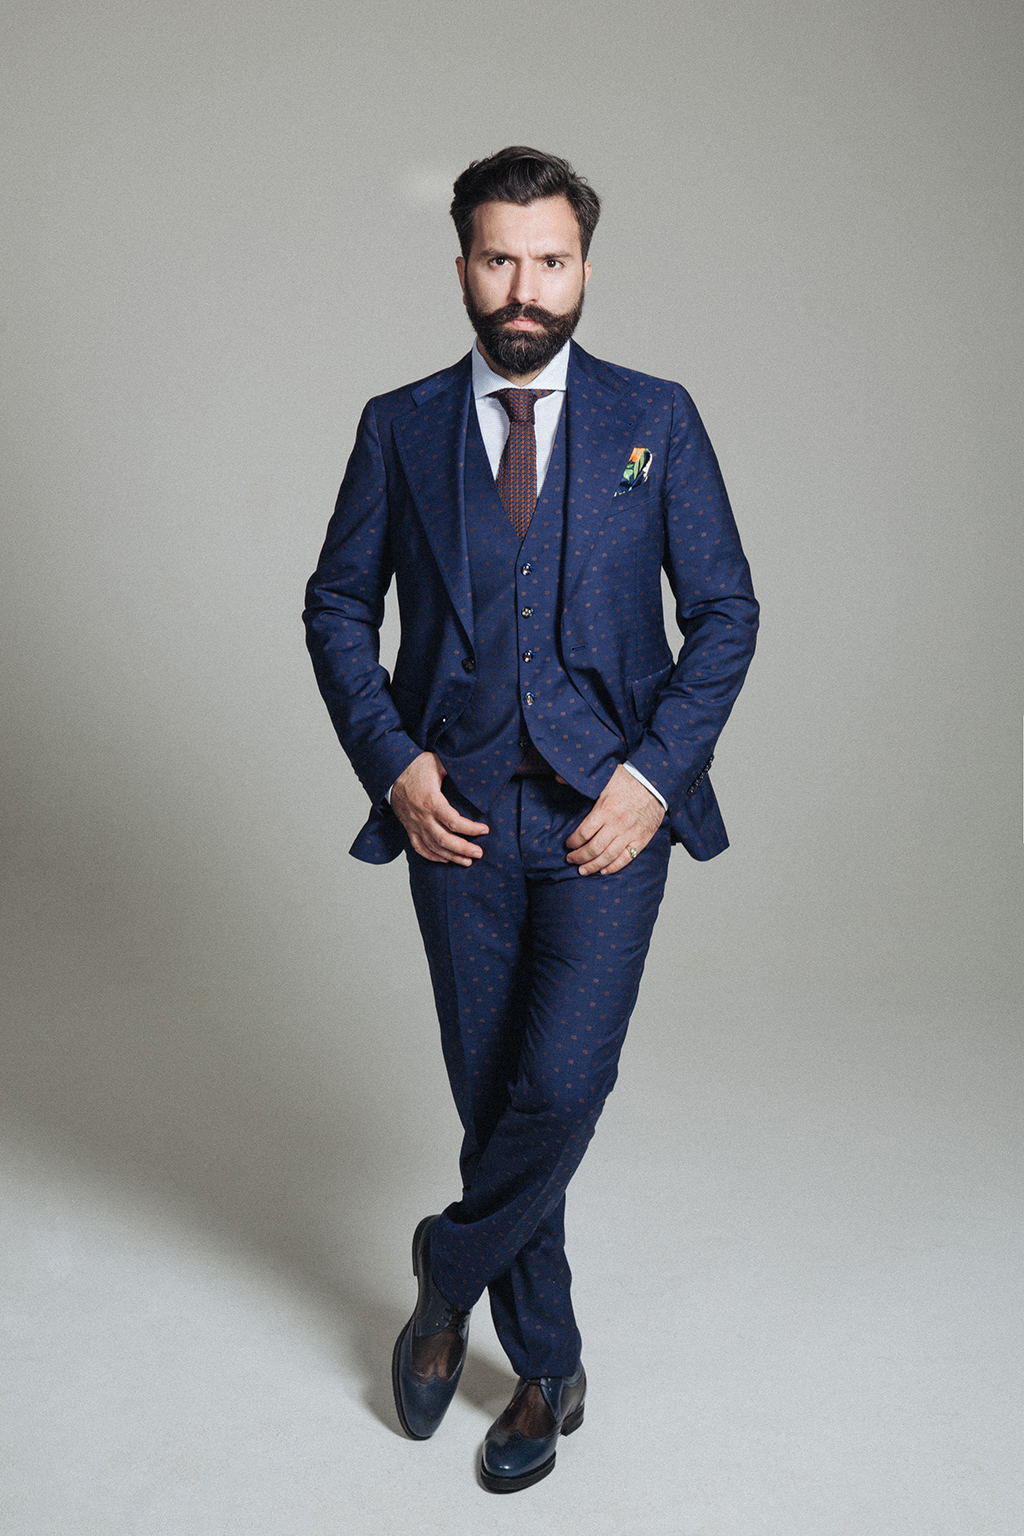 tailor_patterned_suit_blue-7